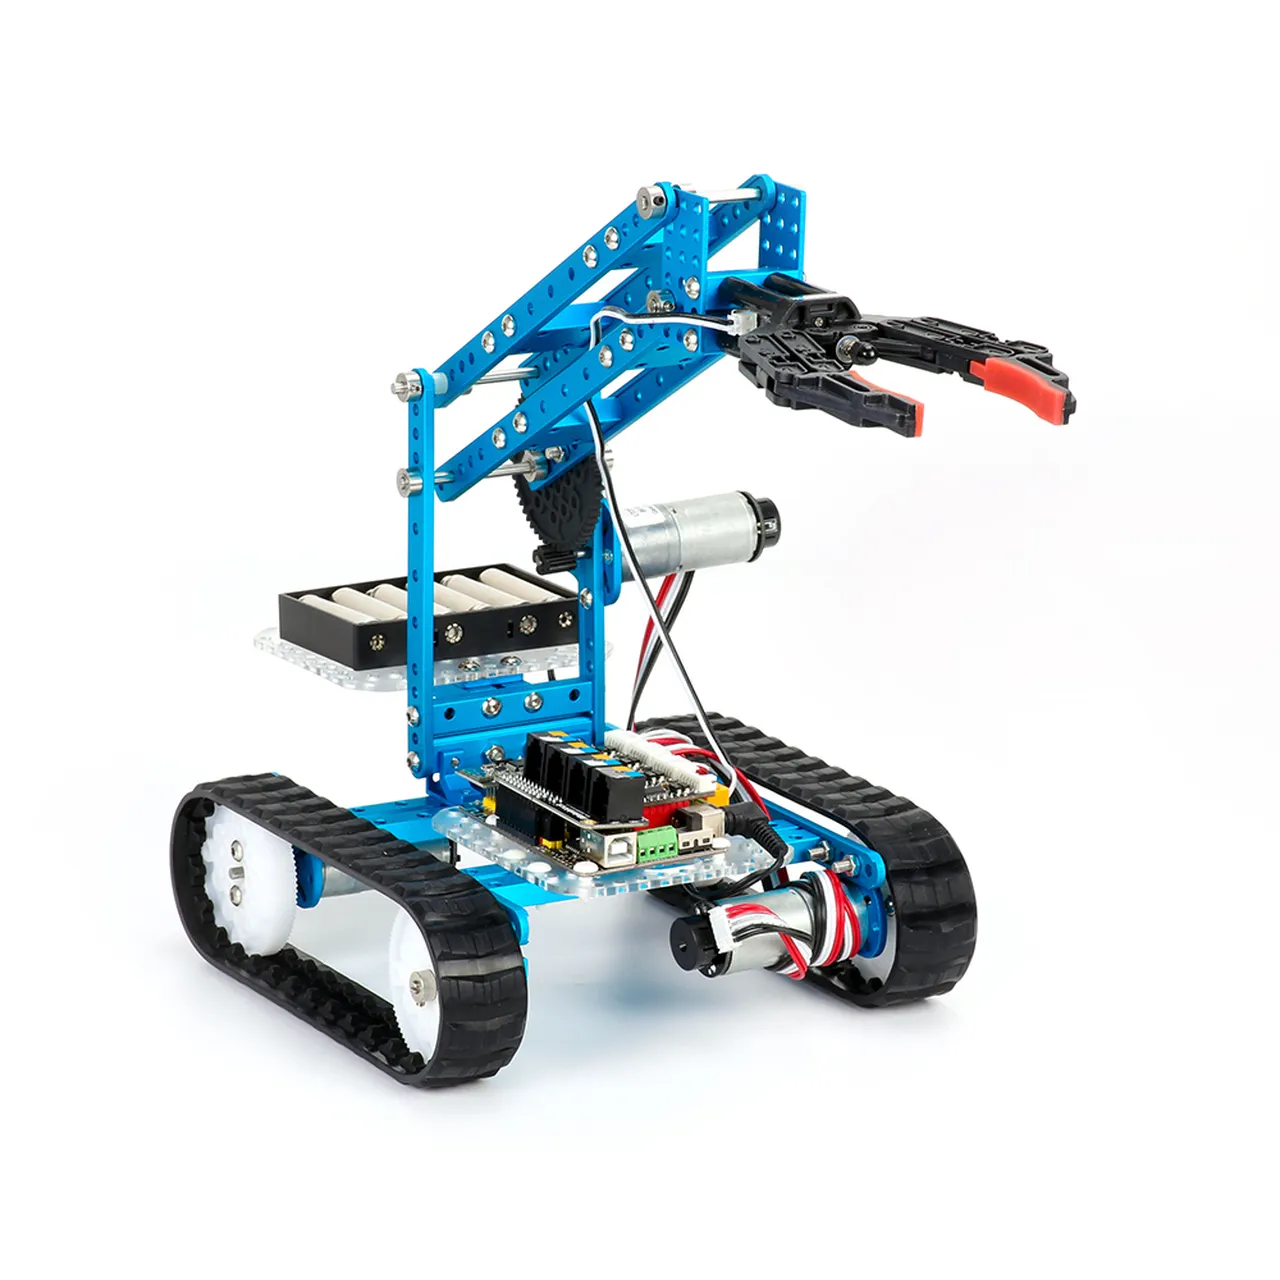 究極のロボットキットv2.0プログラム可能なロボット子供の早期教育インテリジェンス10in1キット